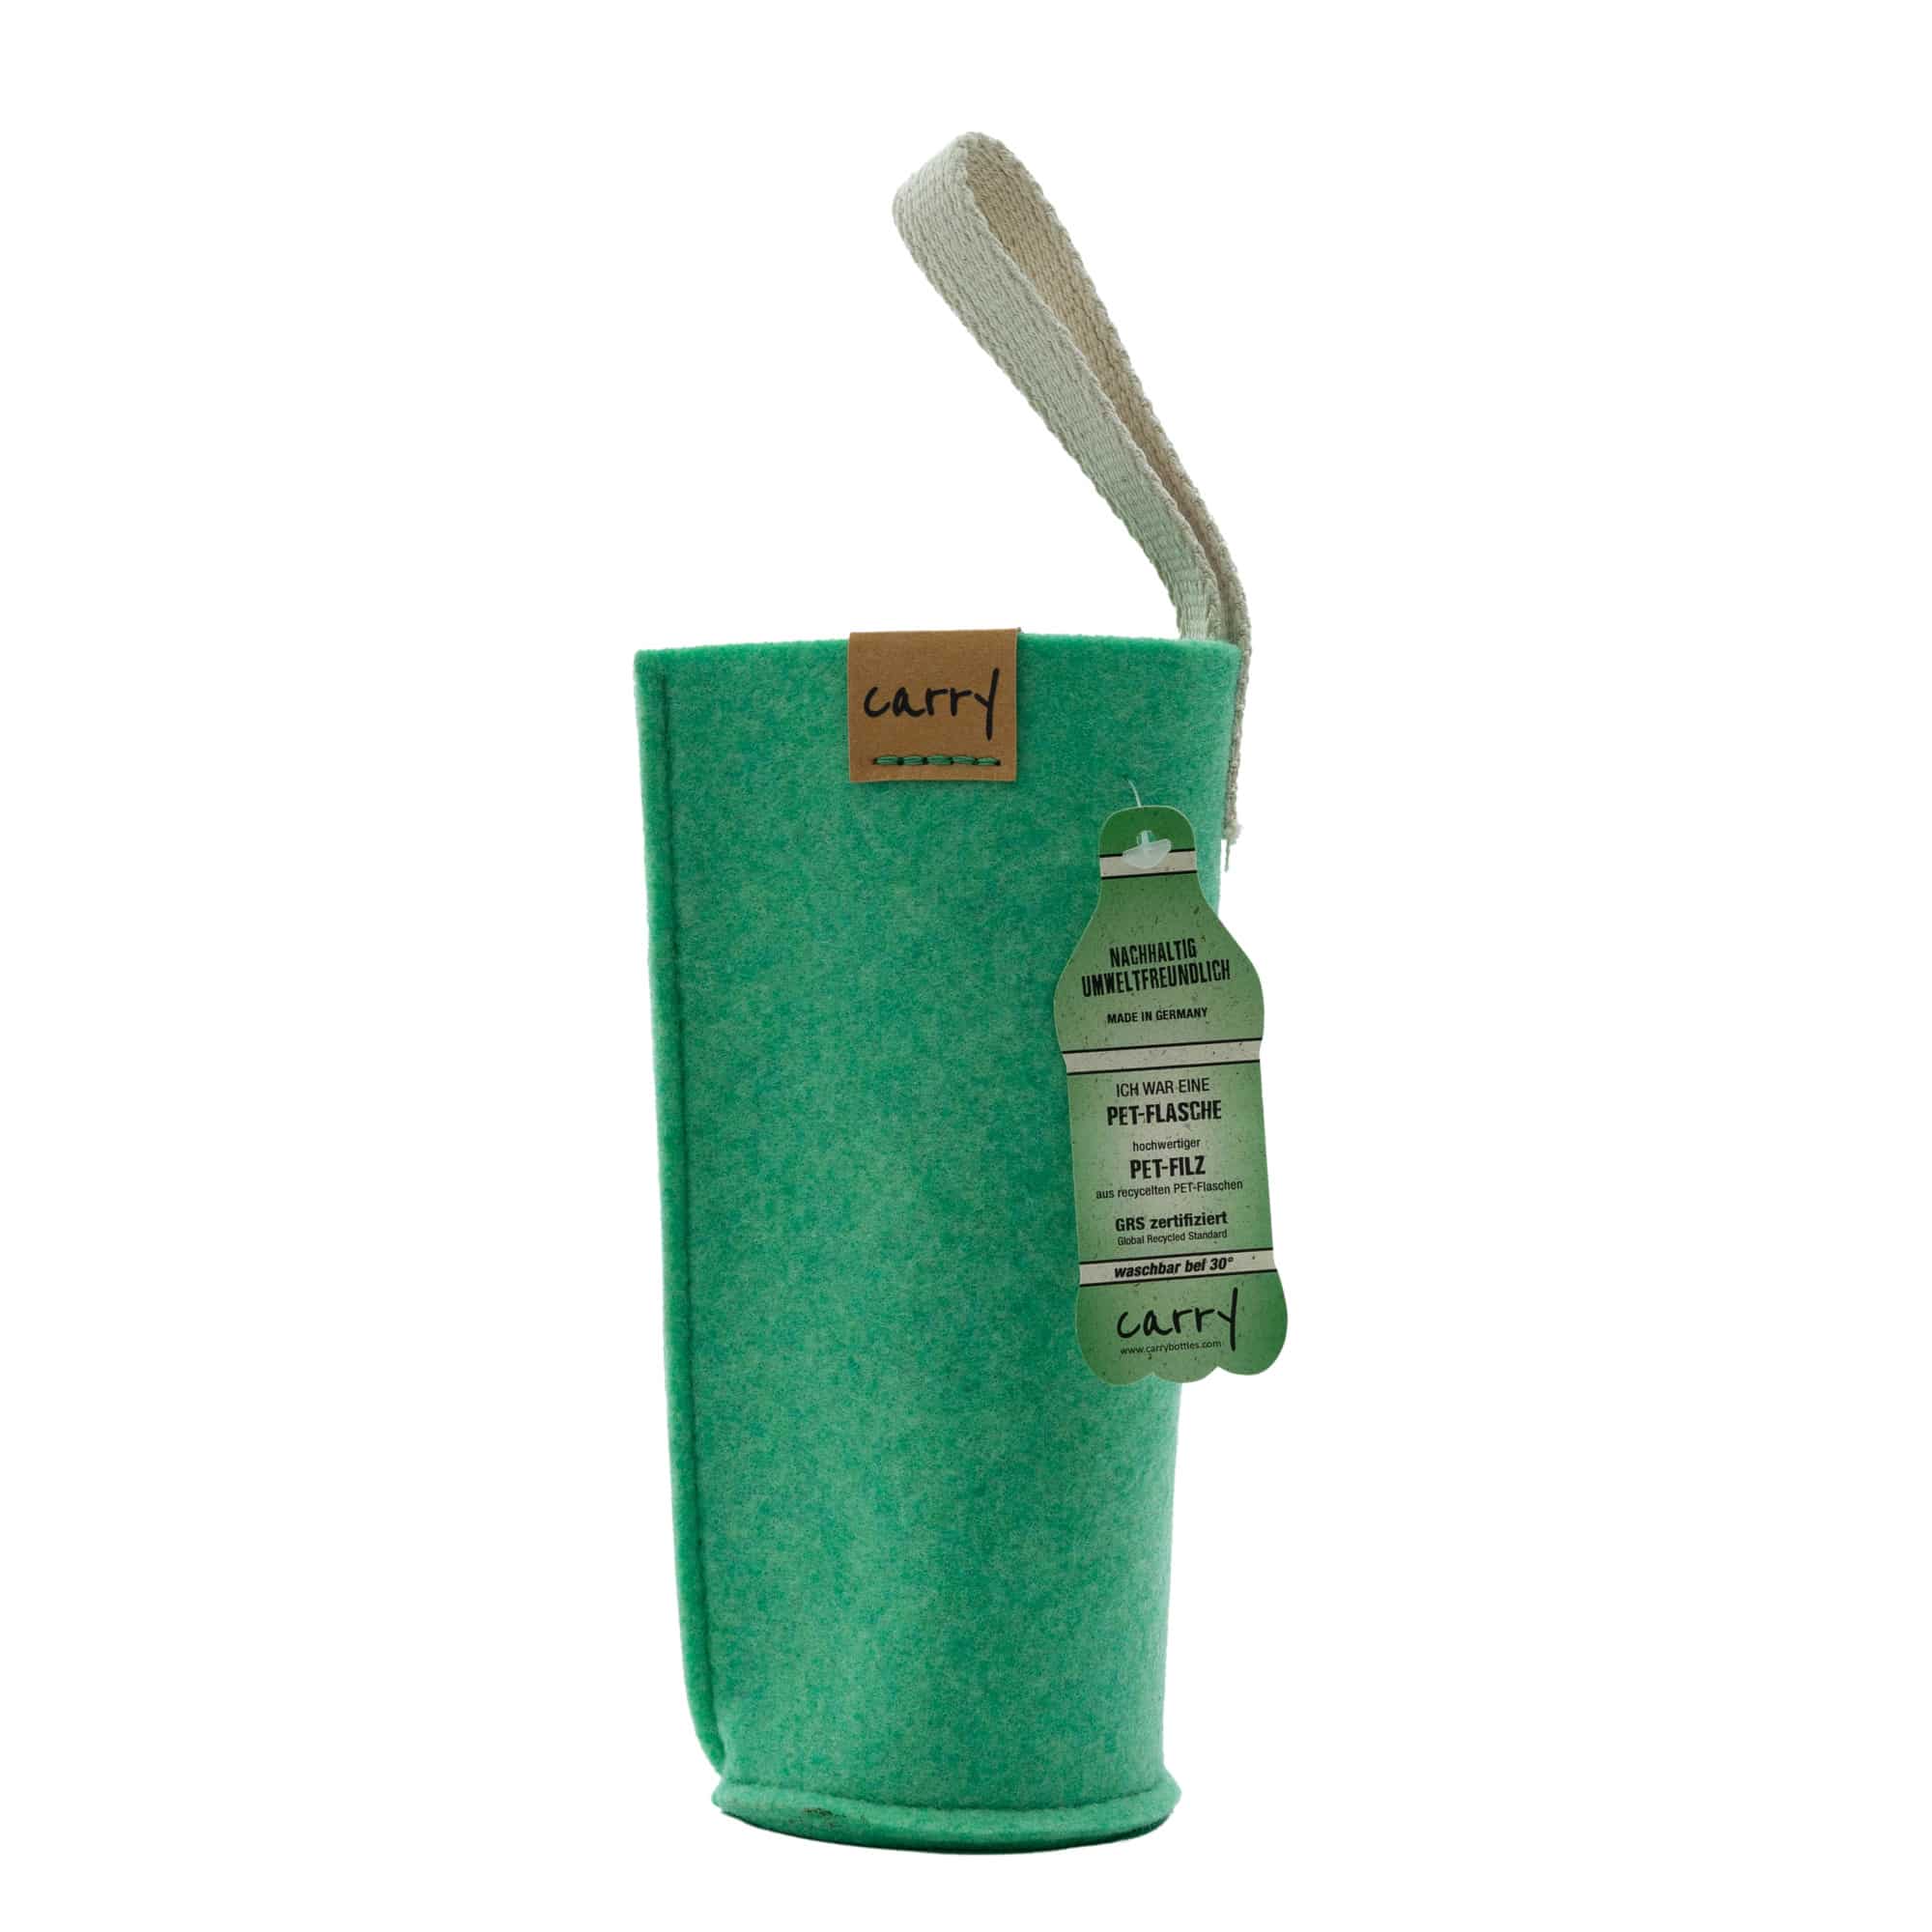 Etui CARRY Sleeve, materiał tekstylny, kolor zielony miętowy